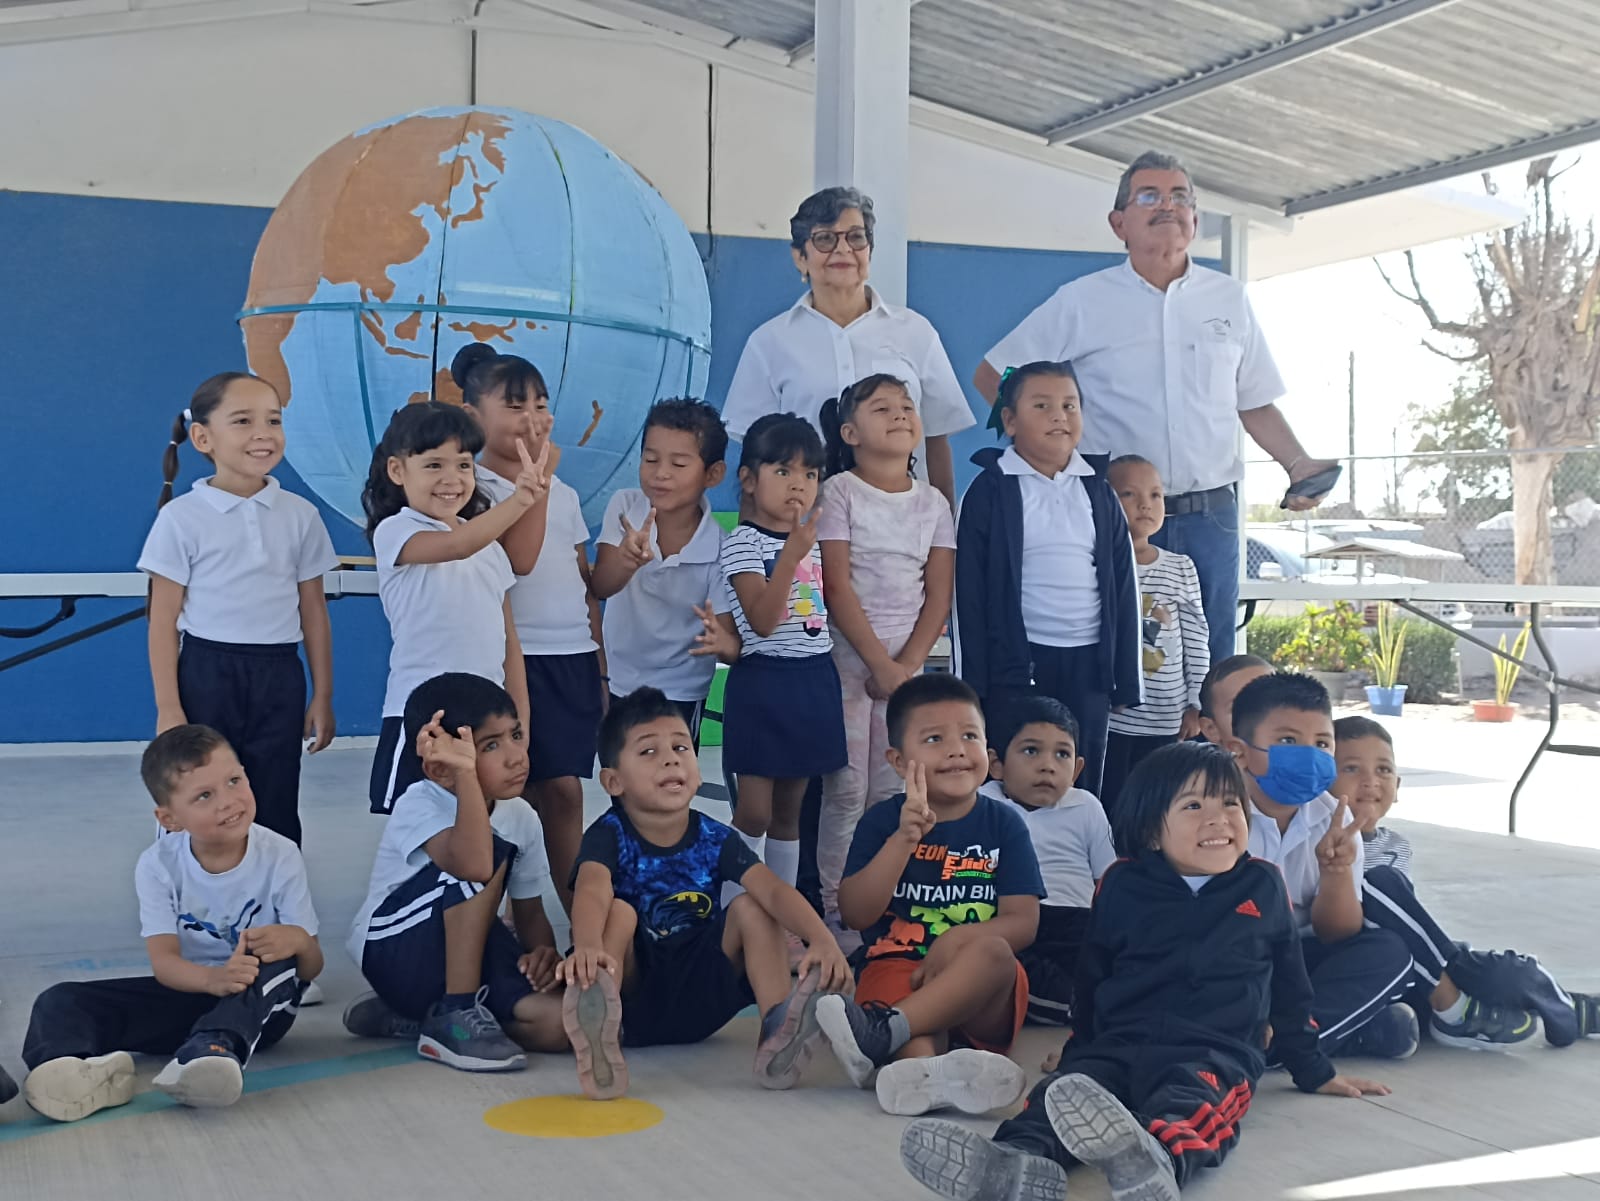 El programa de “Cuentacuentos” es llevado a jardín de niños “Margarita Castro Castro”